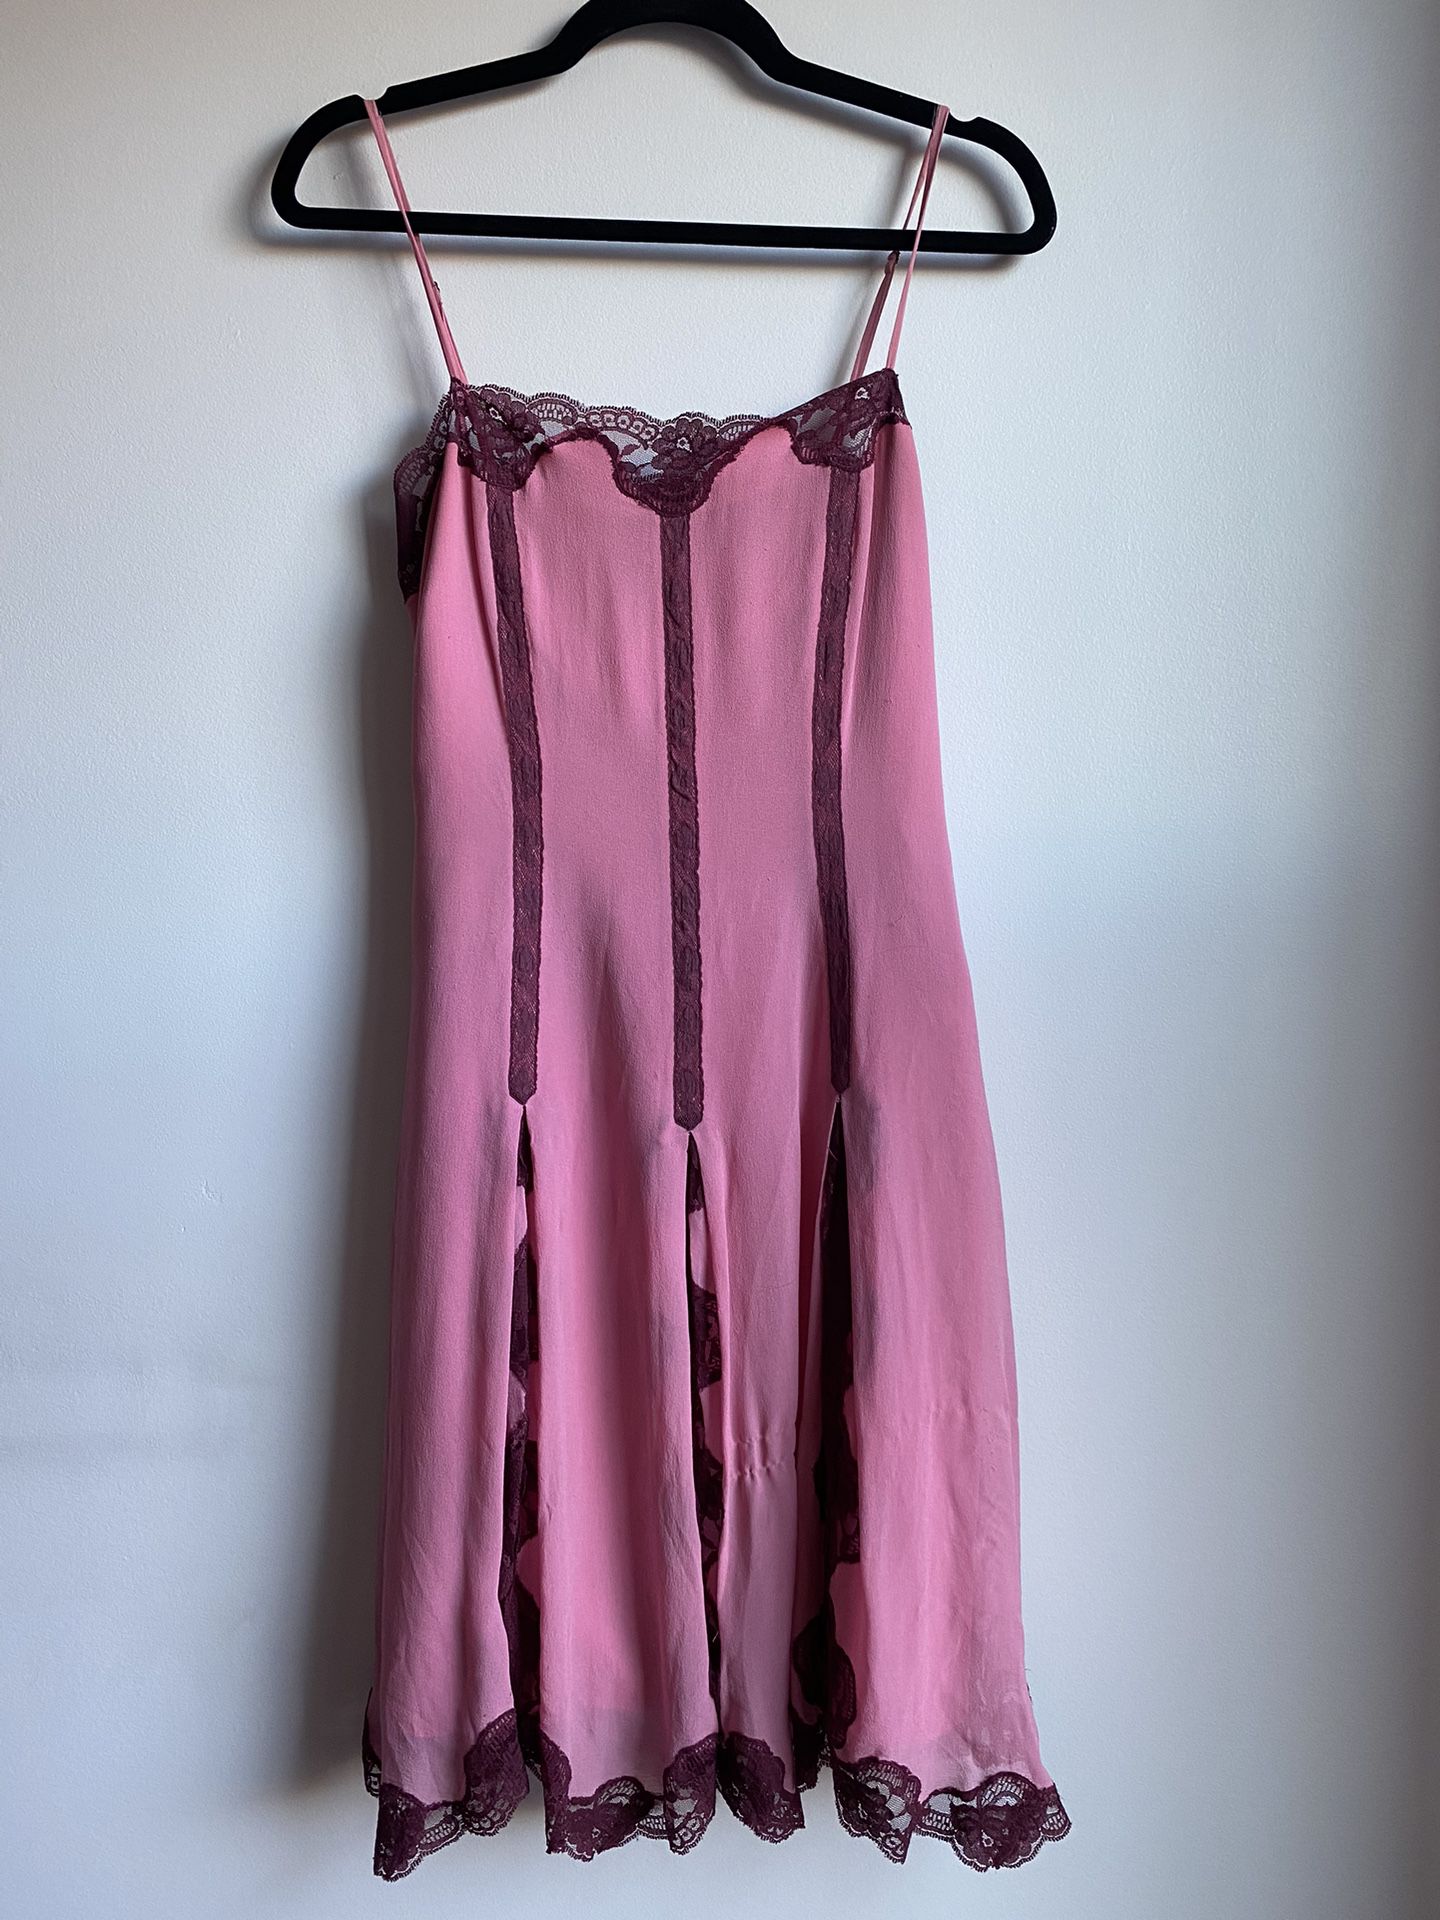 Betsey Johnson pink dress